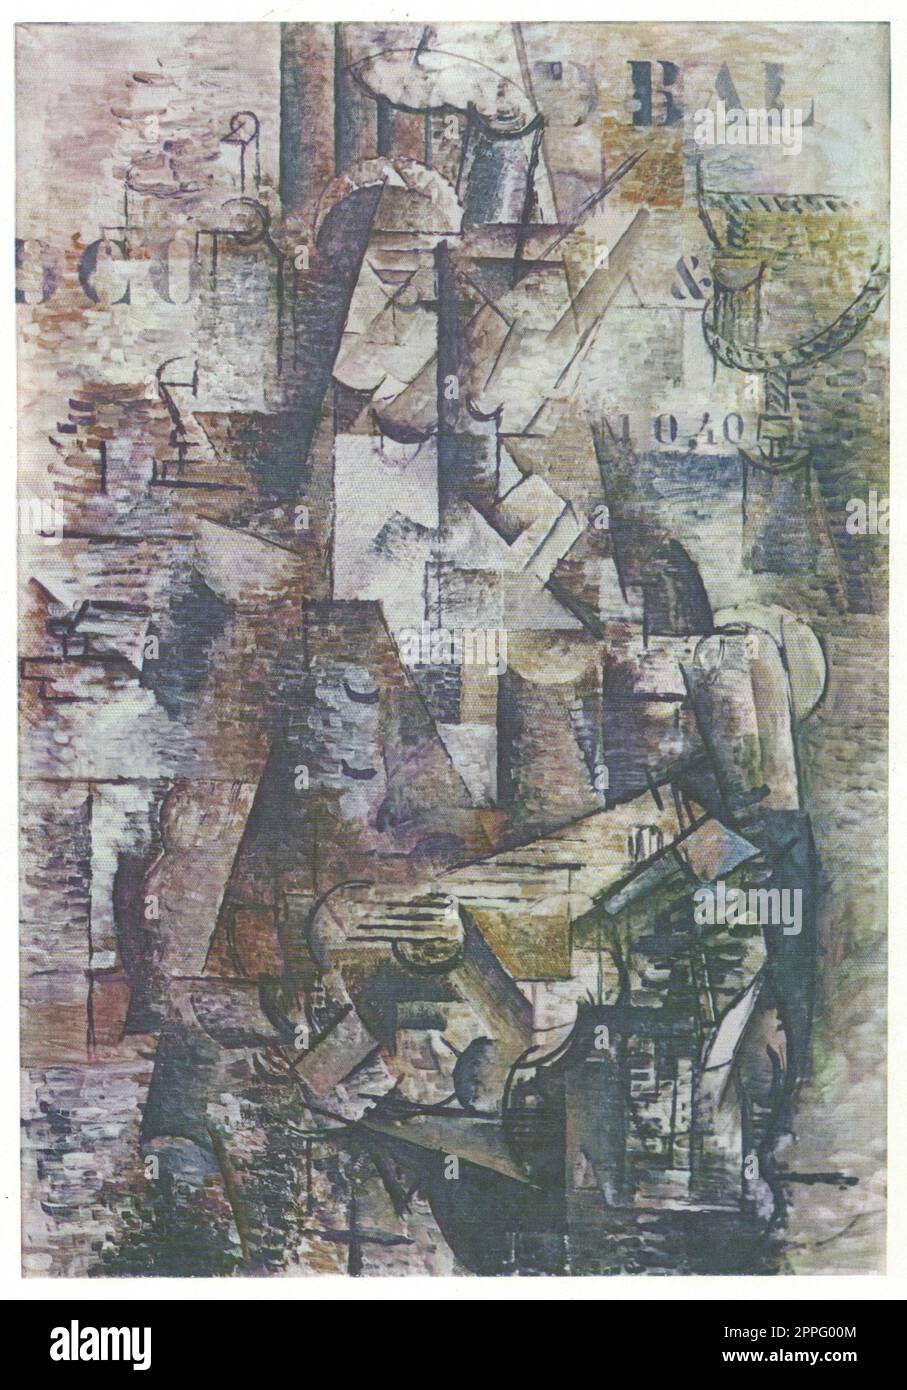 Georges Braque, les Portugais, 1911, huile sur toile. Georges Braque, né le 13 mai 1882 et mort le 31 août 1963, est un peintre, collagiste, dessinateur, graveur et sculpteur français du 20e siècle. Ses contributions les plus notables ont été dans son alliance avec le fauvisme f Banque D'Images